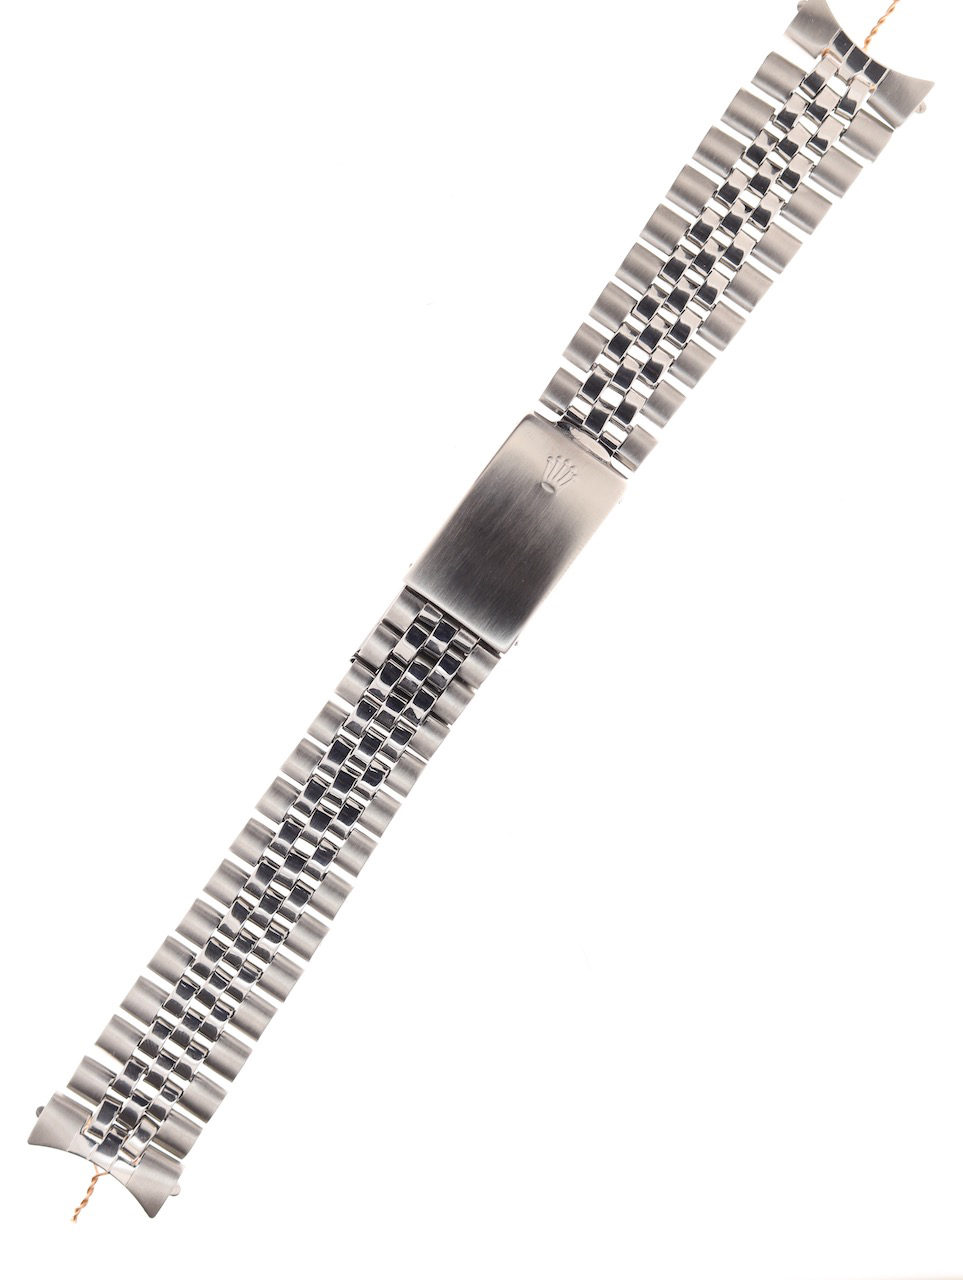 Oyster 78350 bracelet (real or fake) | WatchUSeek Watch Forums